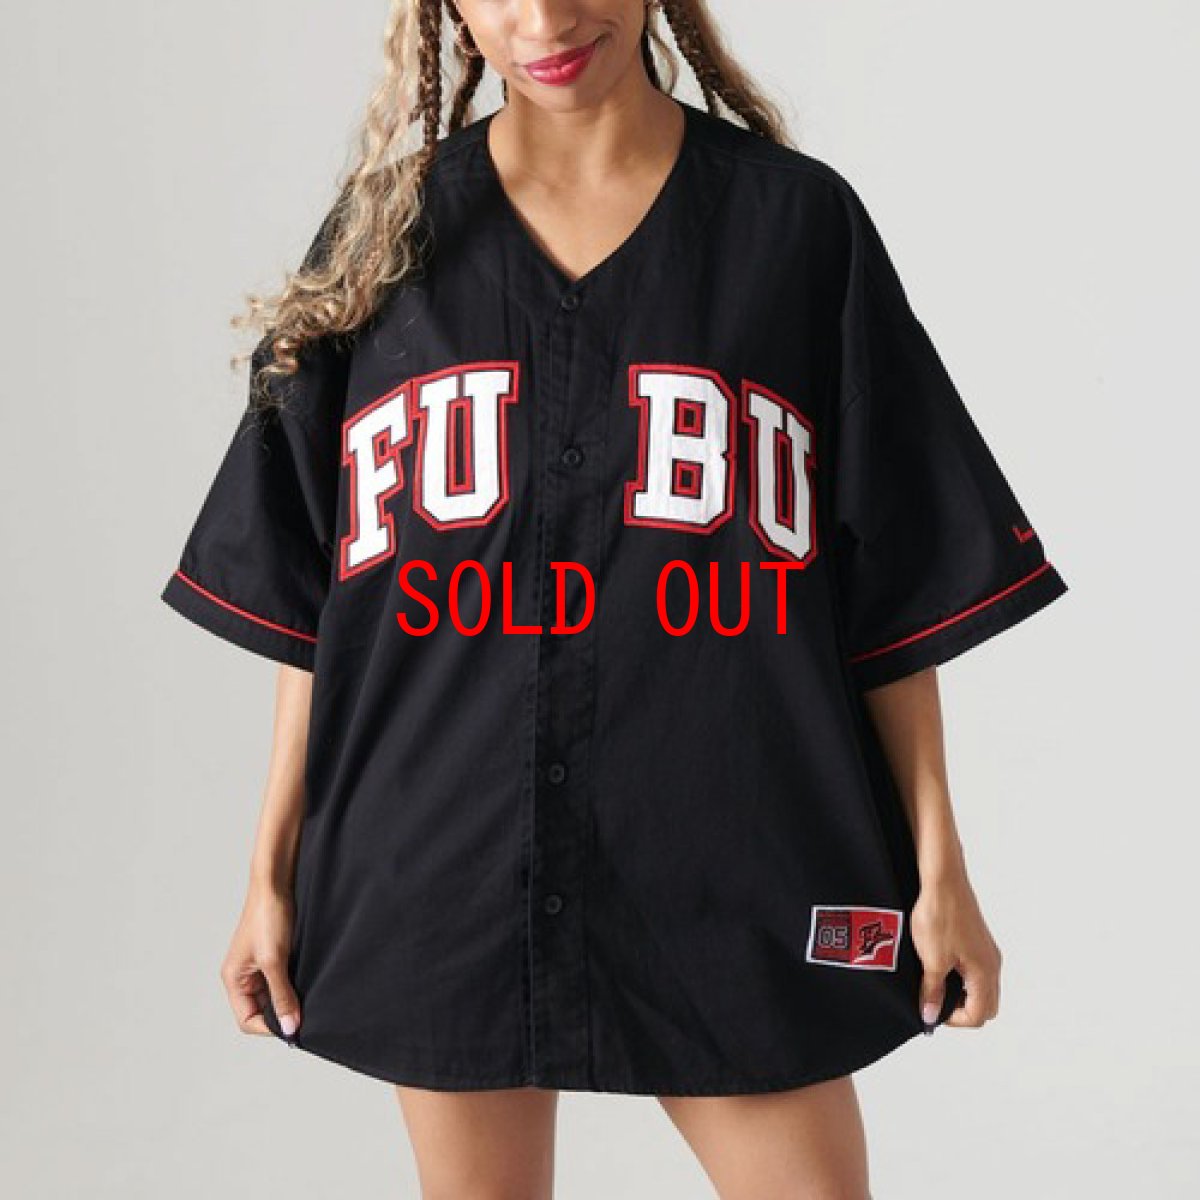 画像1: Classic Logo Baseball Jersey Game Shirt embroidery 刺繍 ワッペン ロゴ ベースボール シャツ ジャージ (1)